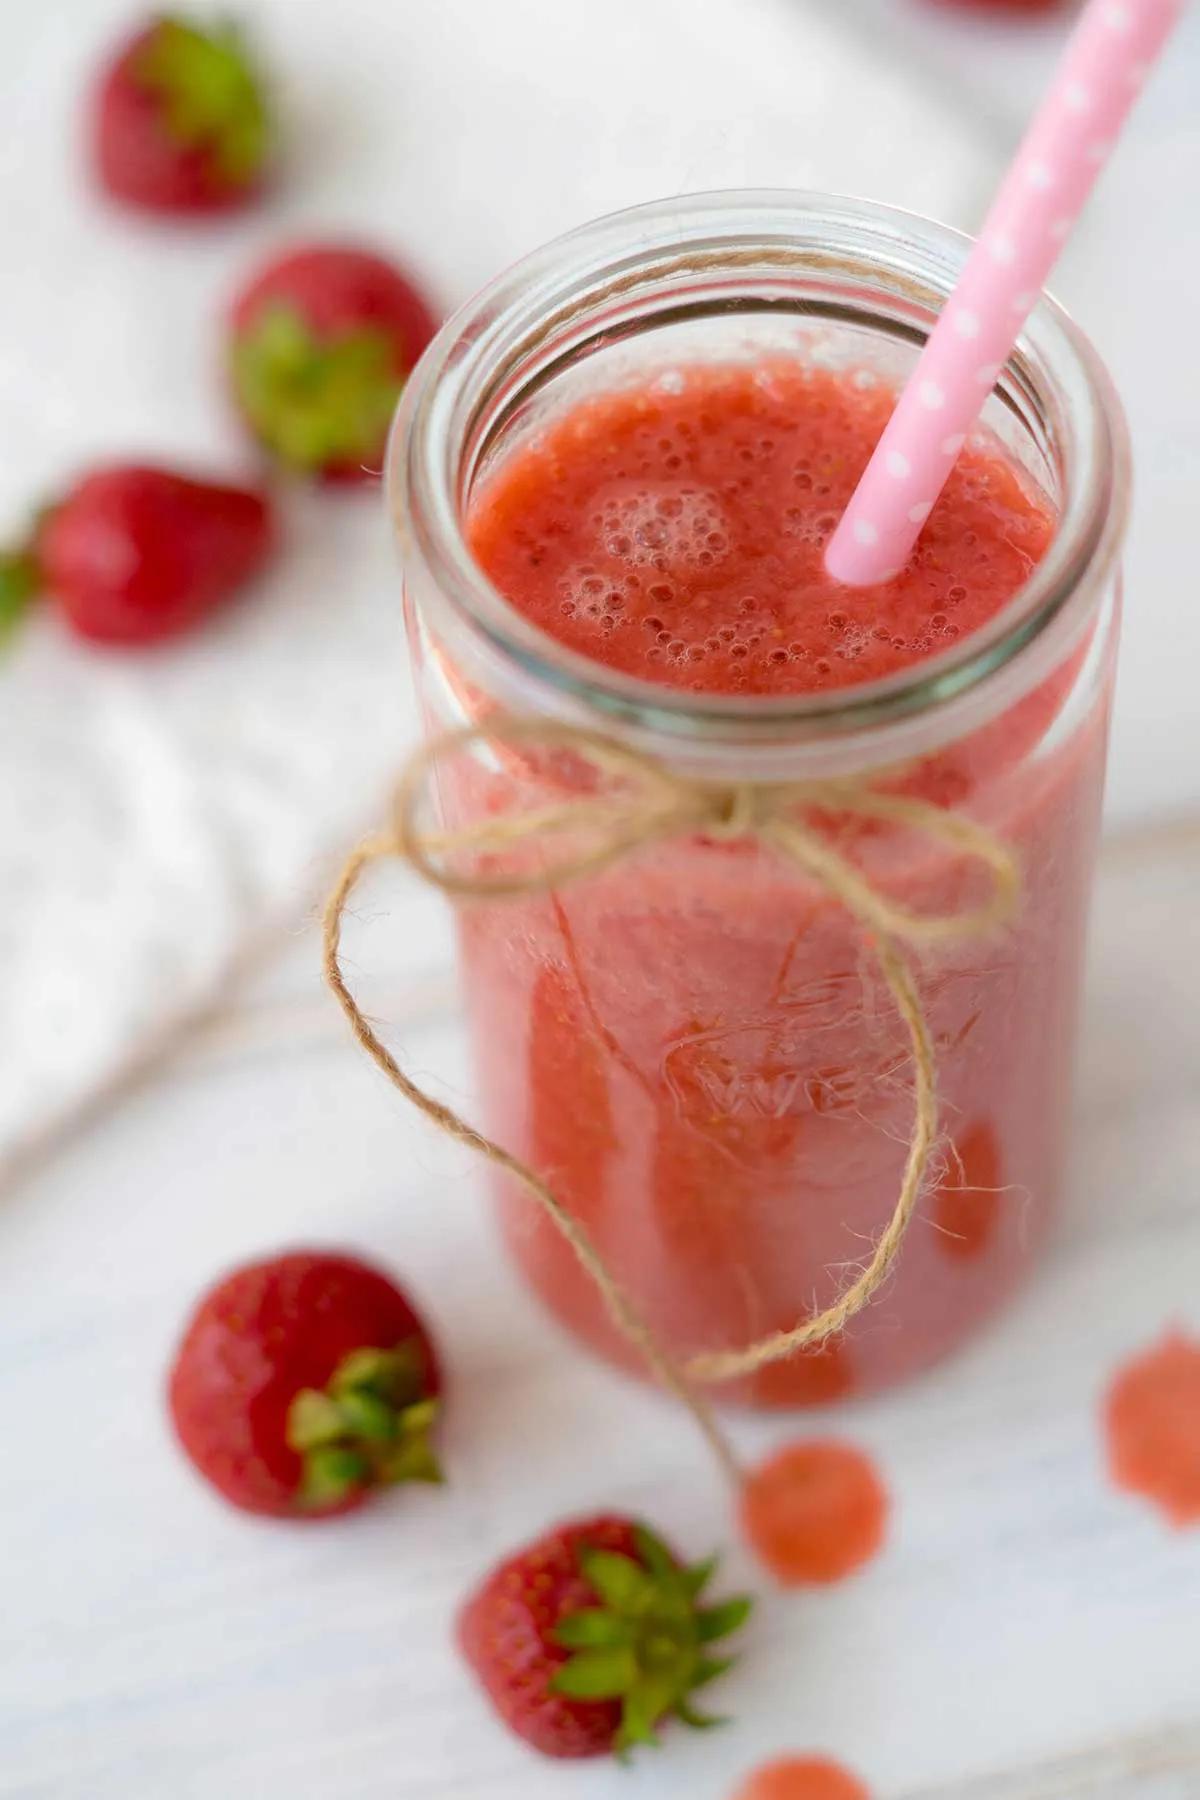 Erdbeer-Smoothie selber machen - Rezept ohne zusätzlichen Zucker